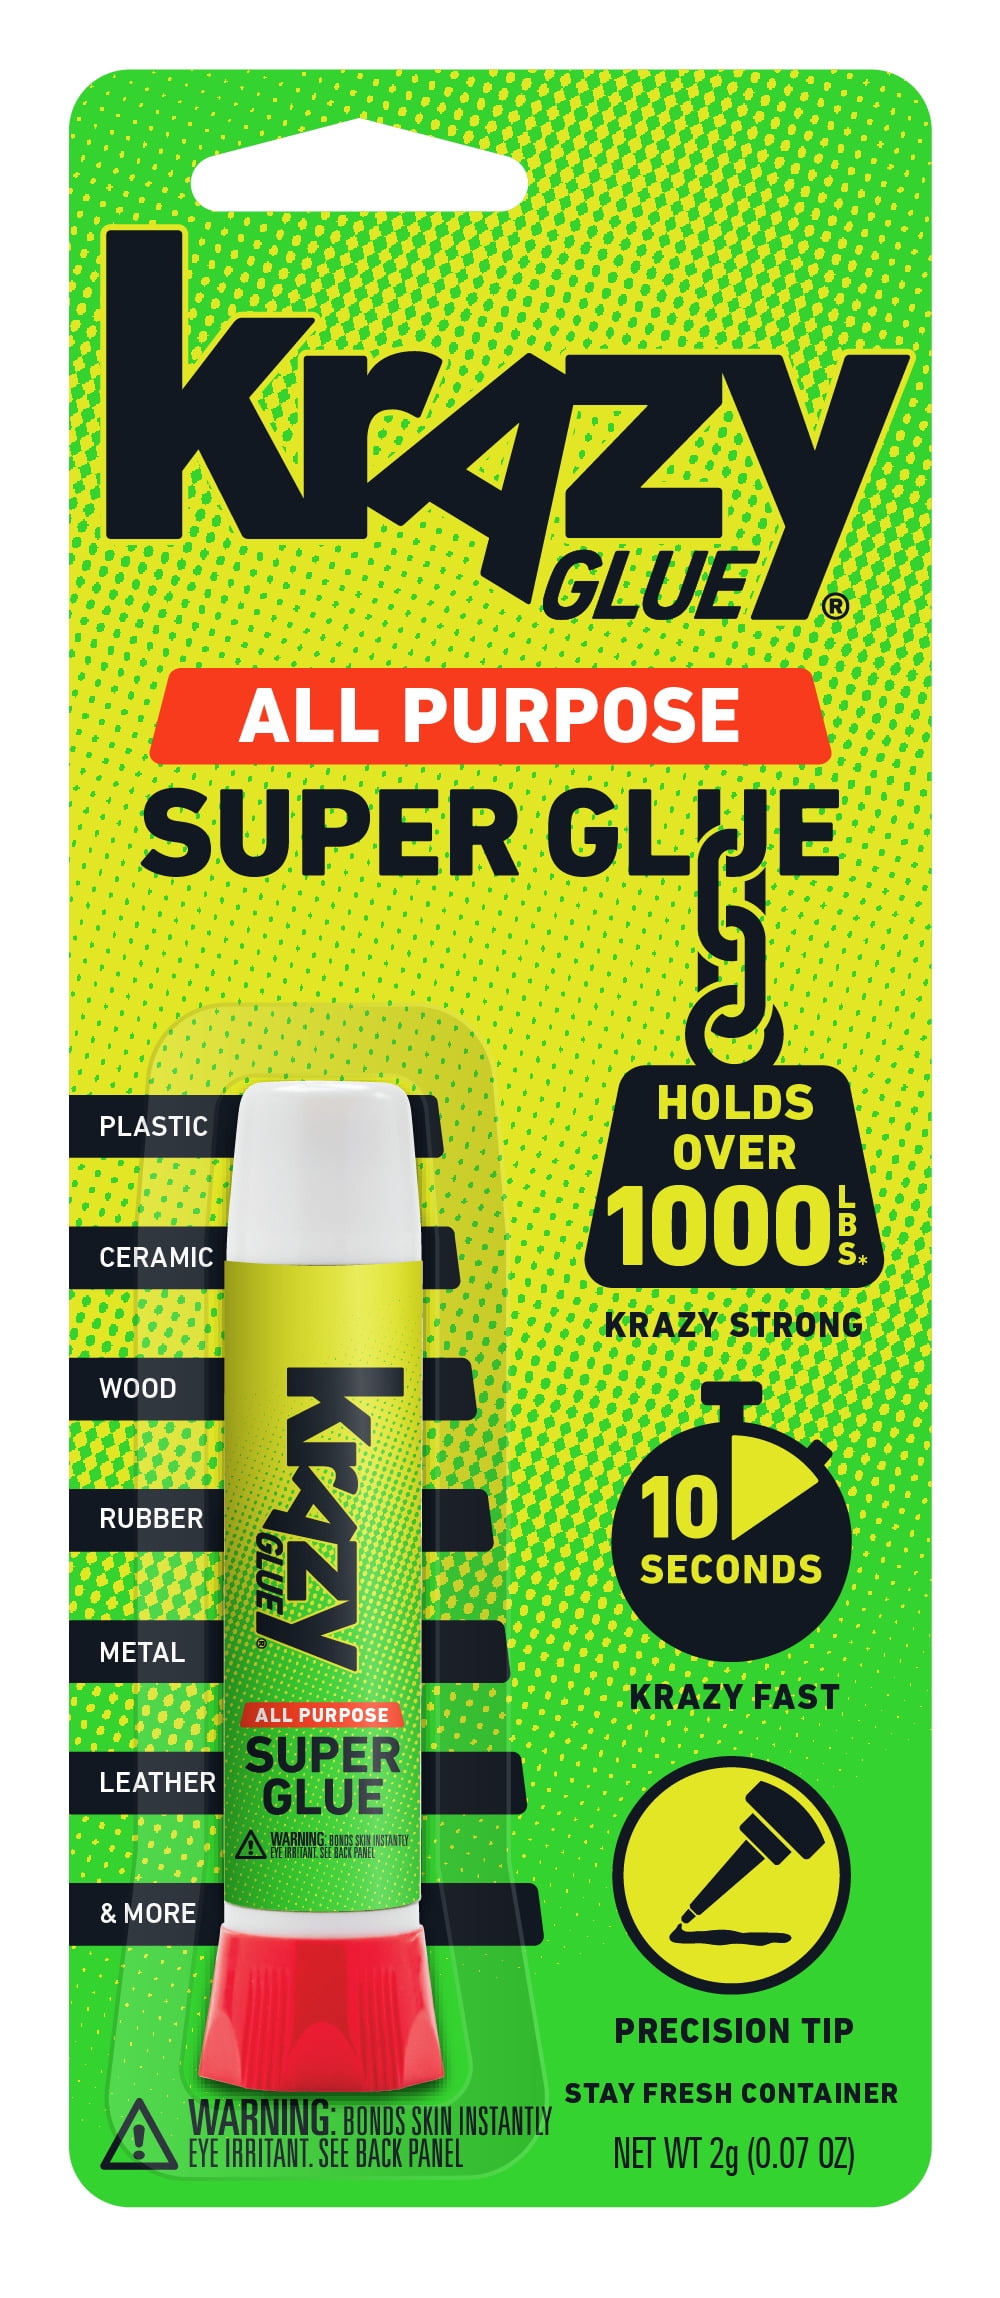 Krazy Glue All Purpose Precision Tip 2g